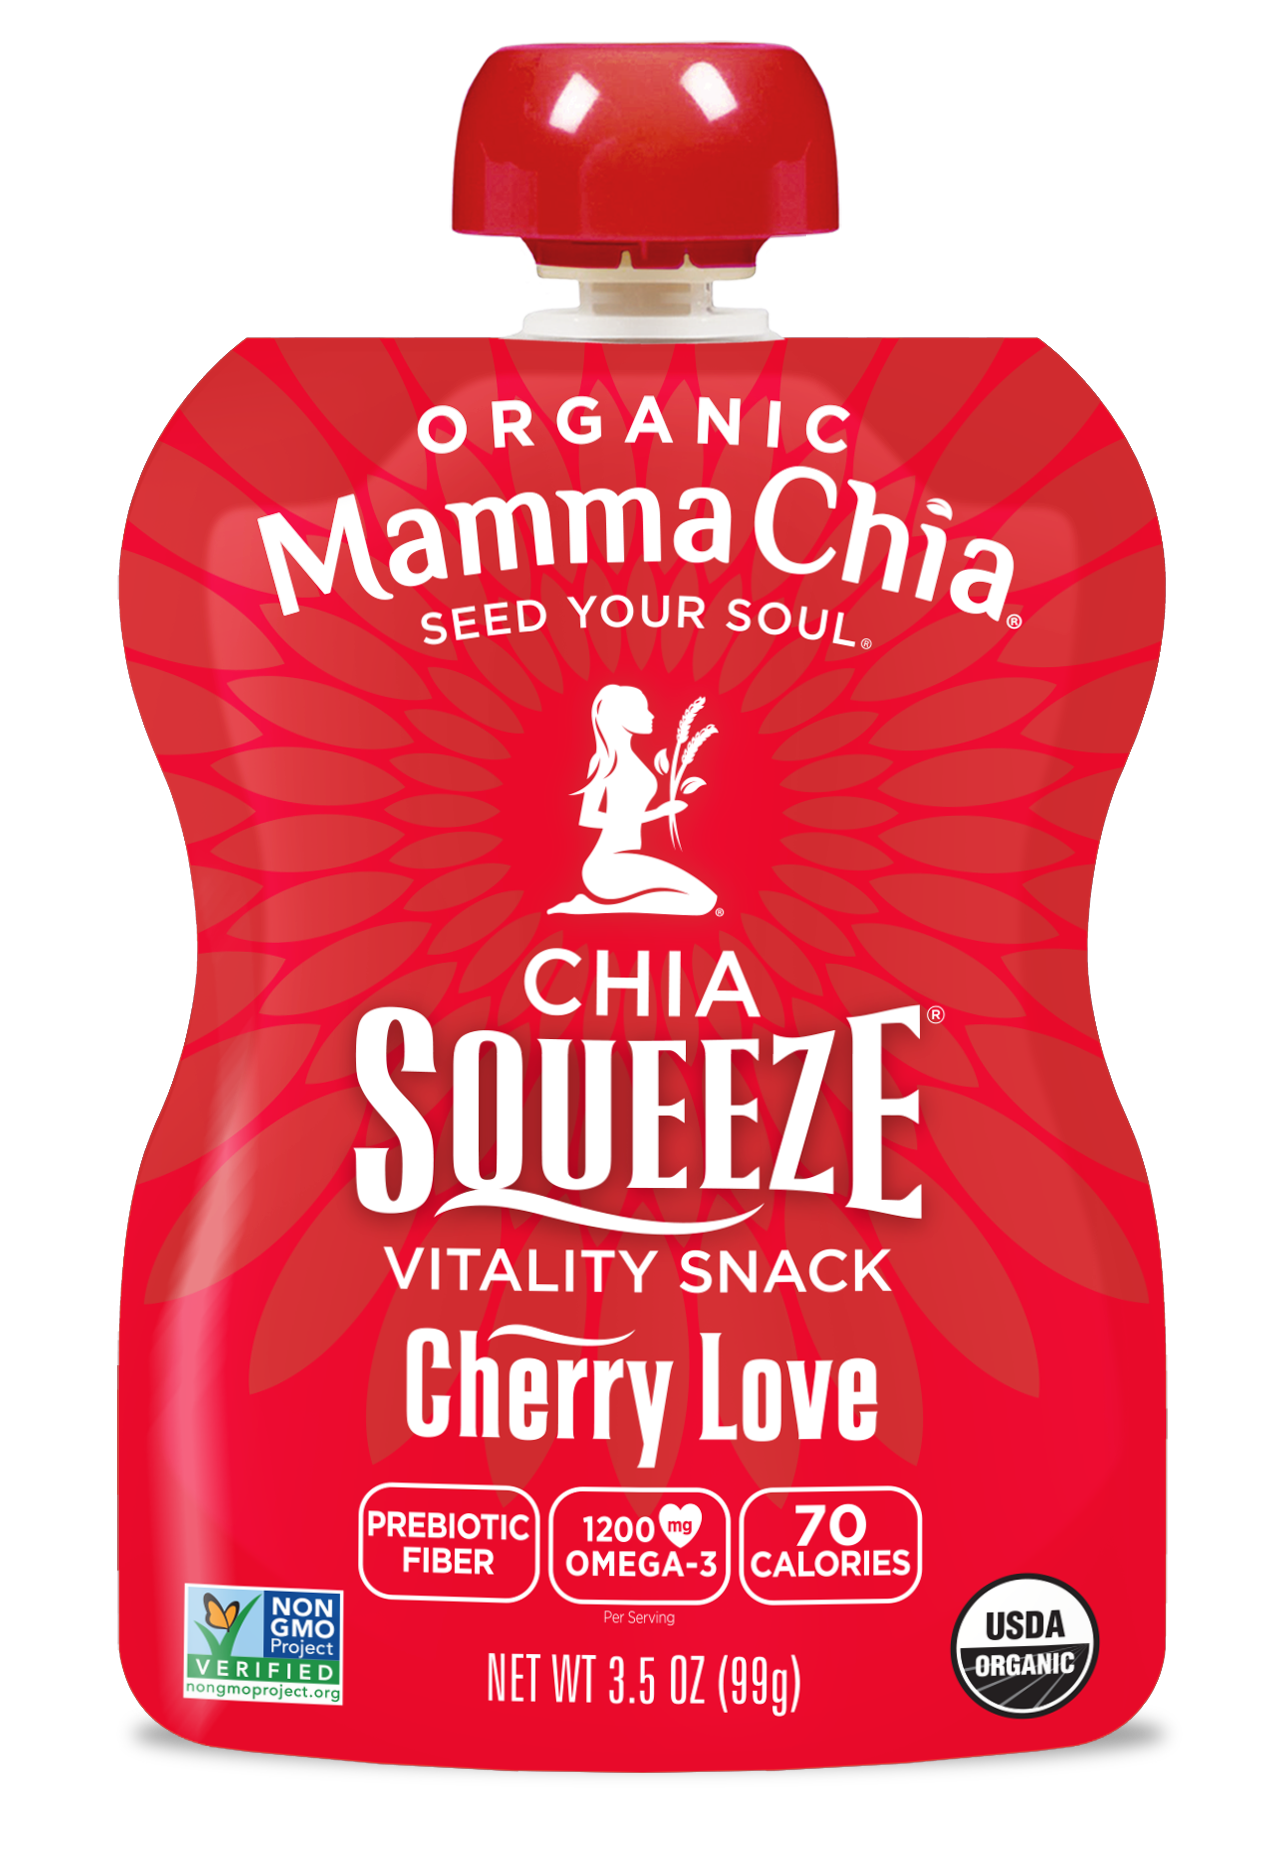 Mamma Chia Cherry Love Organic Chia Squeeze 2 innerpacks per case 28.0 oz